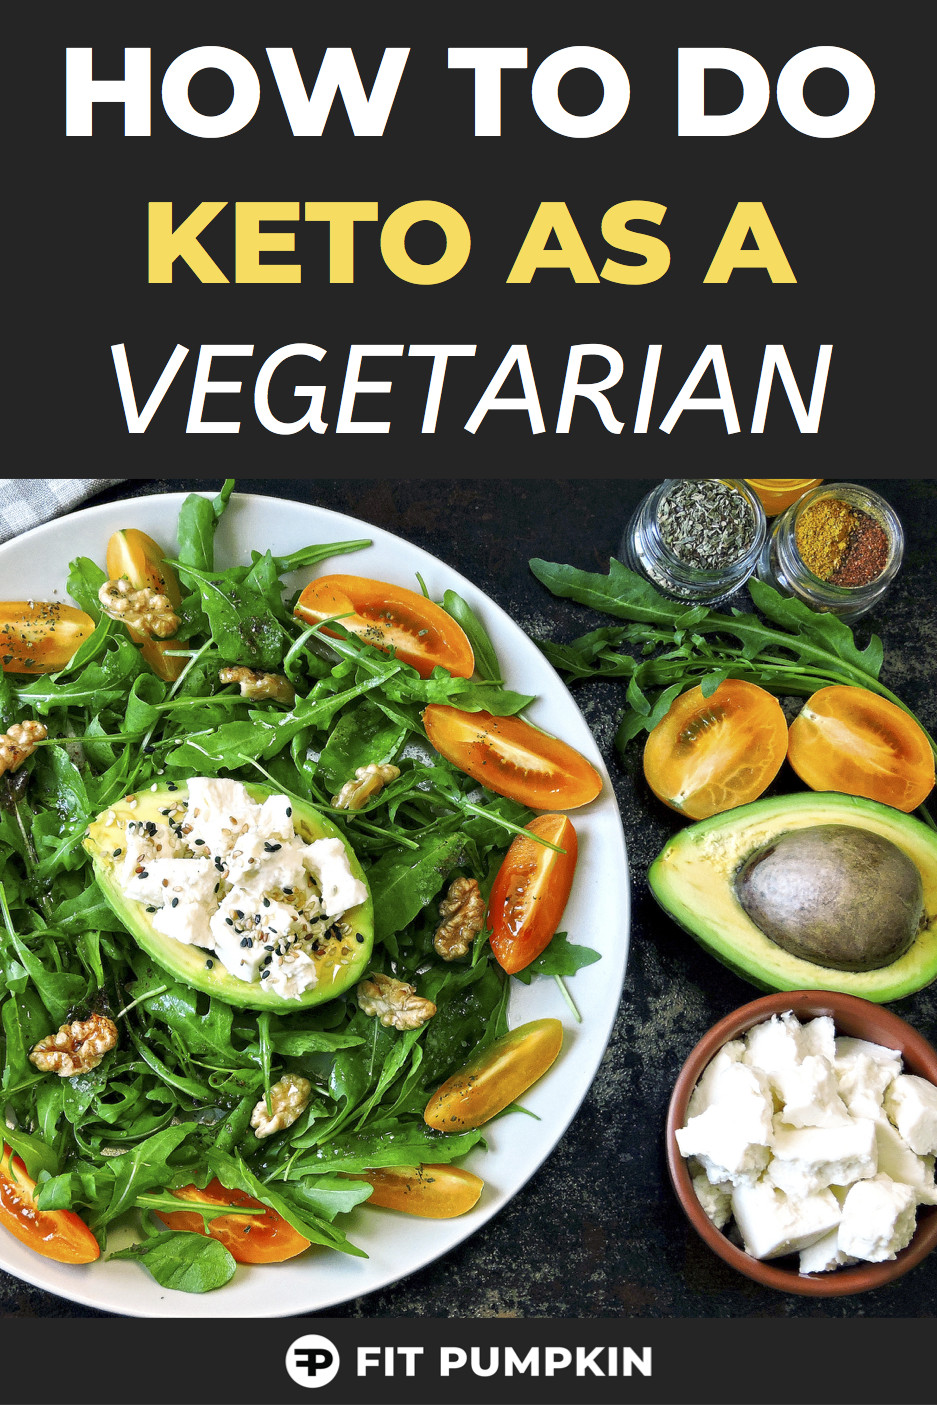 Vegetarian Keto Diet List
 Ve arian Keto The Ultimate Beginner s Guide